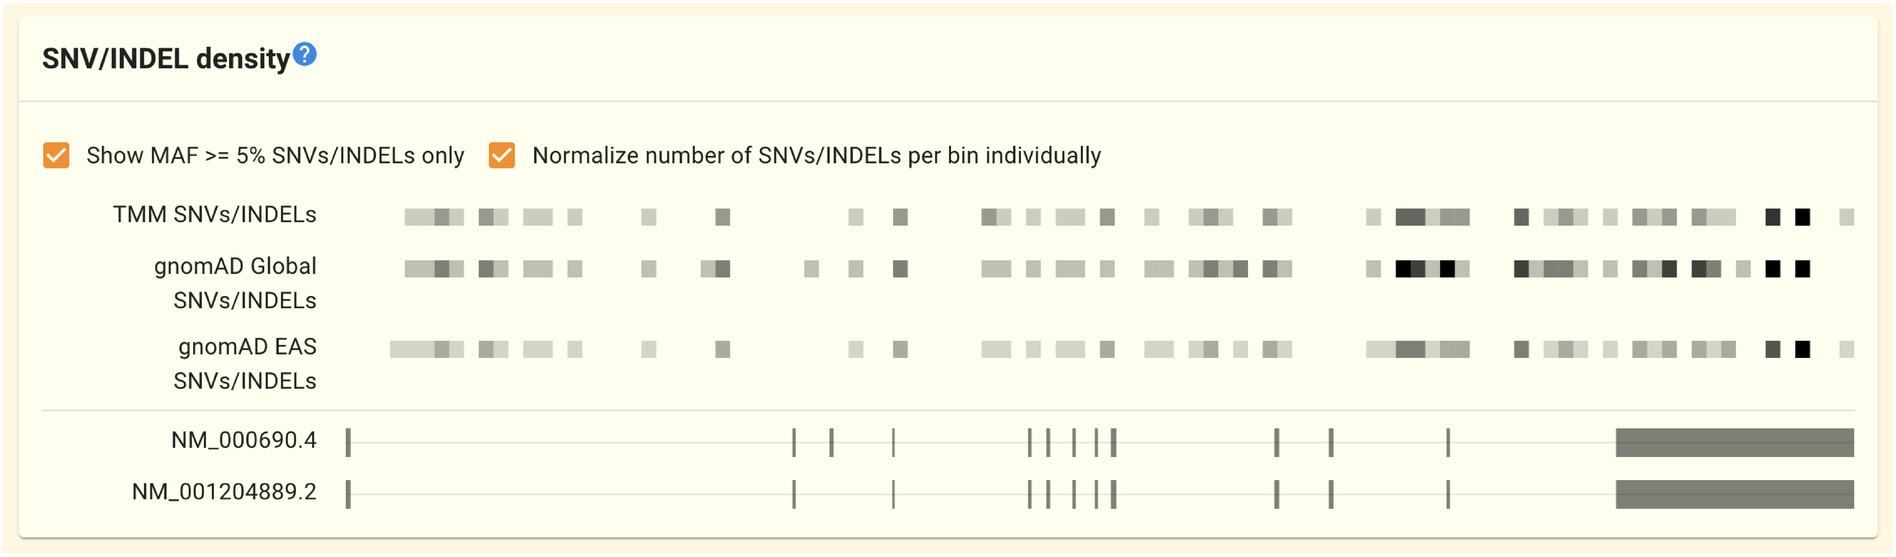 ../../_images/gene-snvindel_density_panel.ja.png